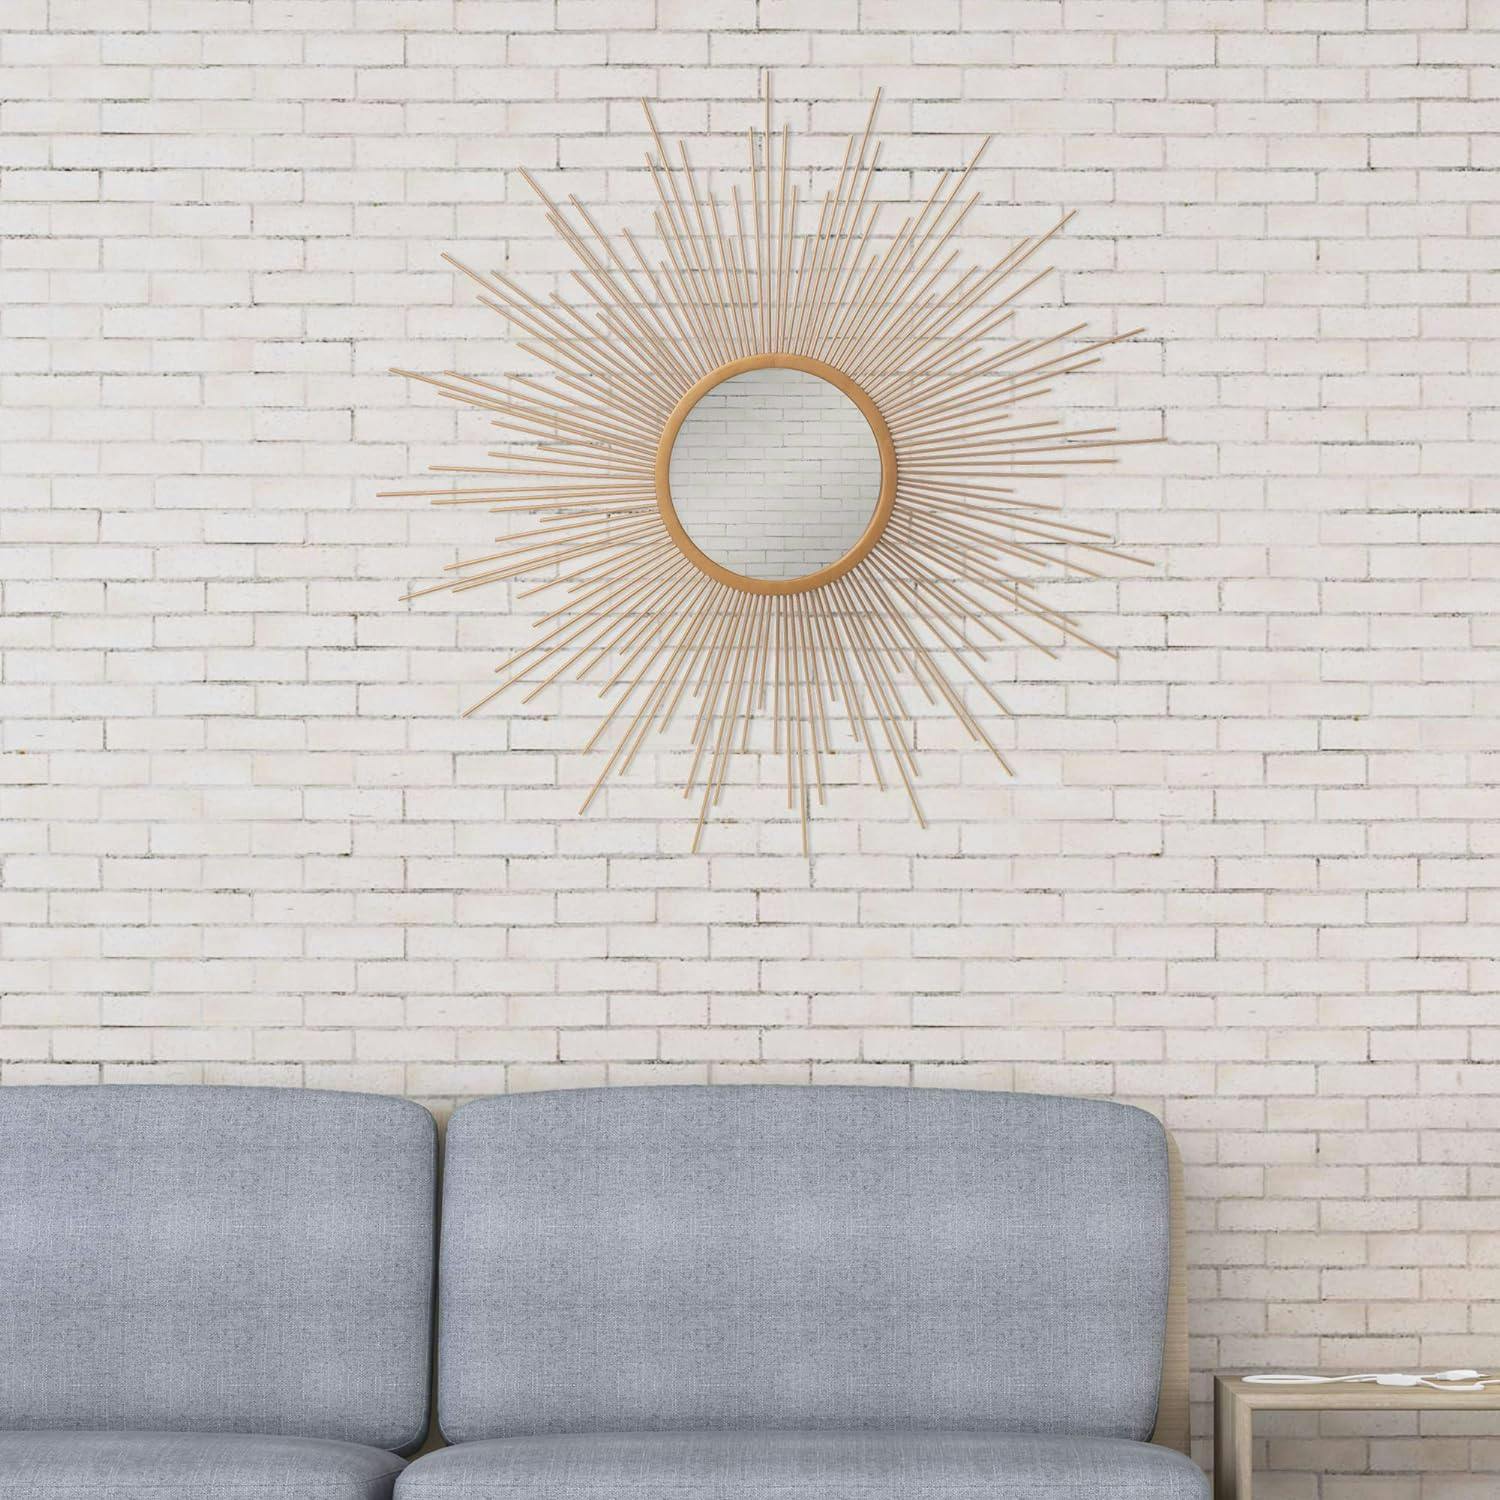 30" Round Gold & Wood Sunburst Wall Accent Mirror